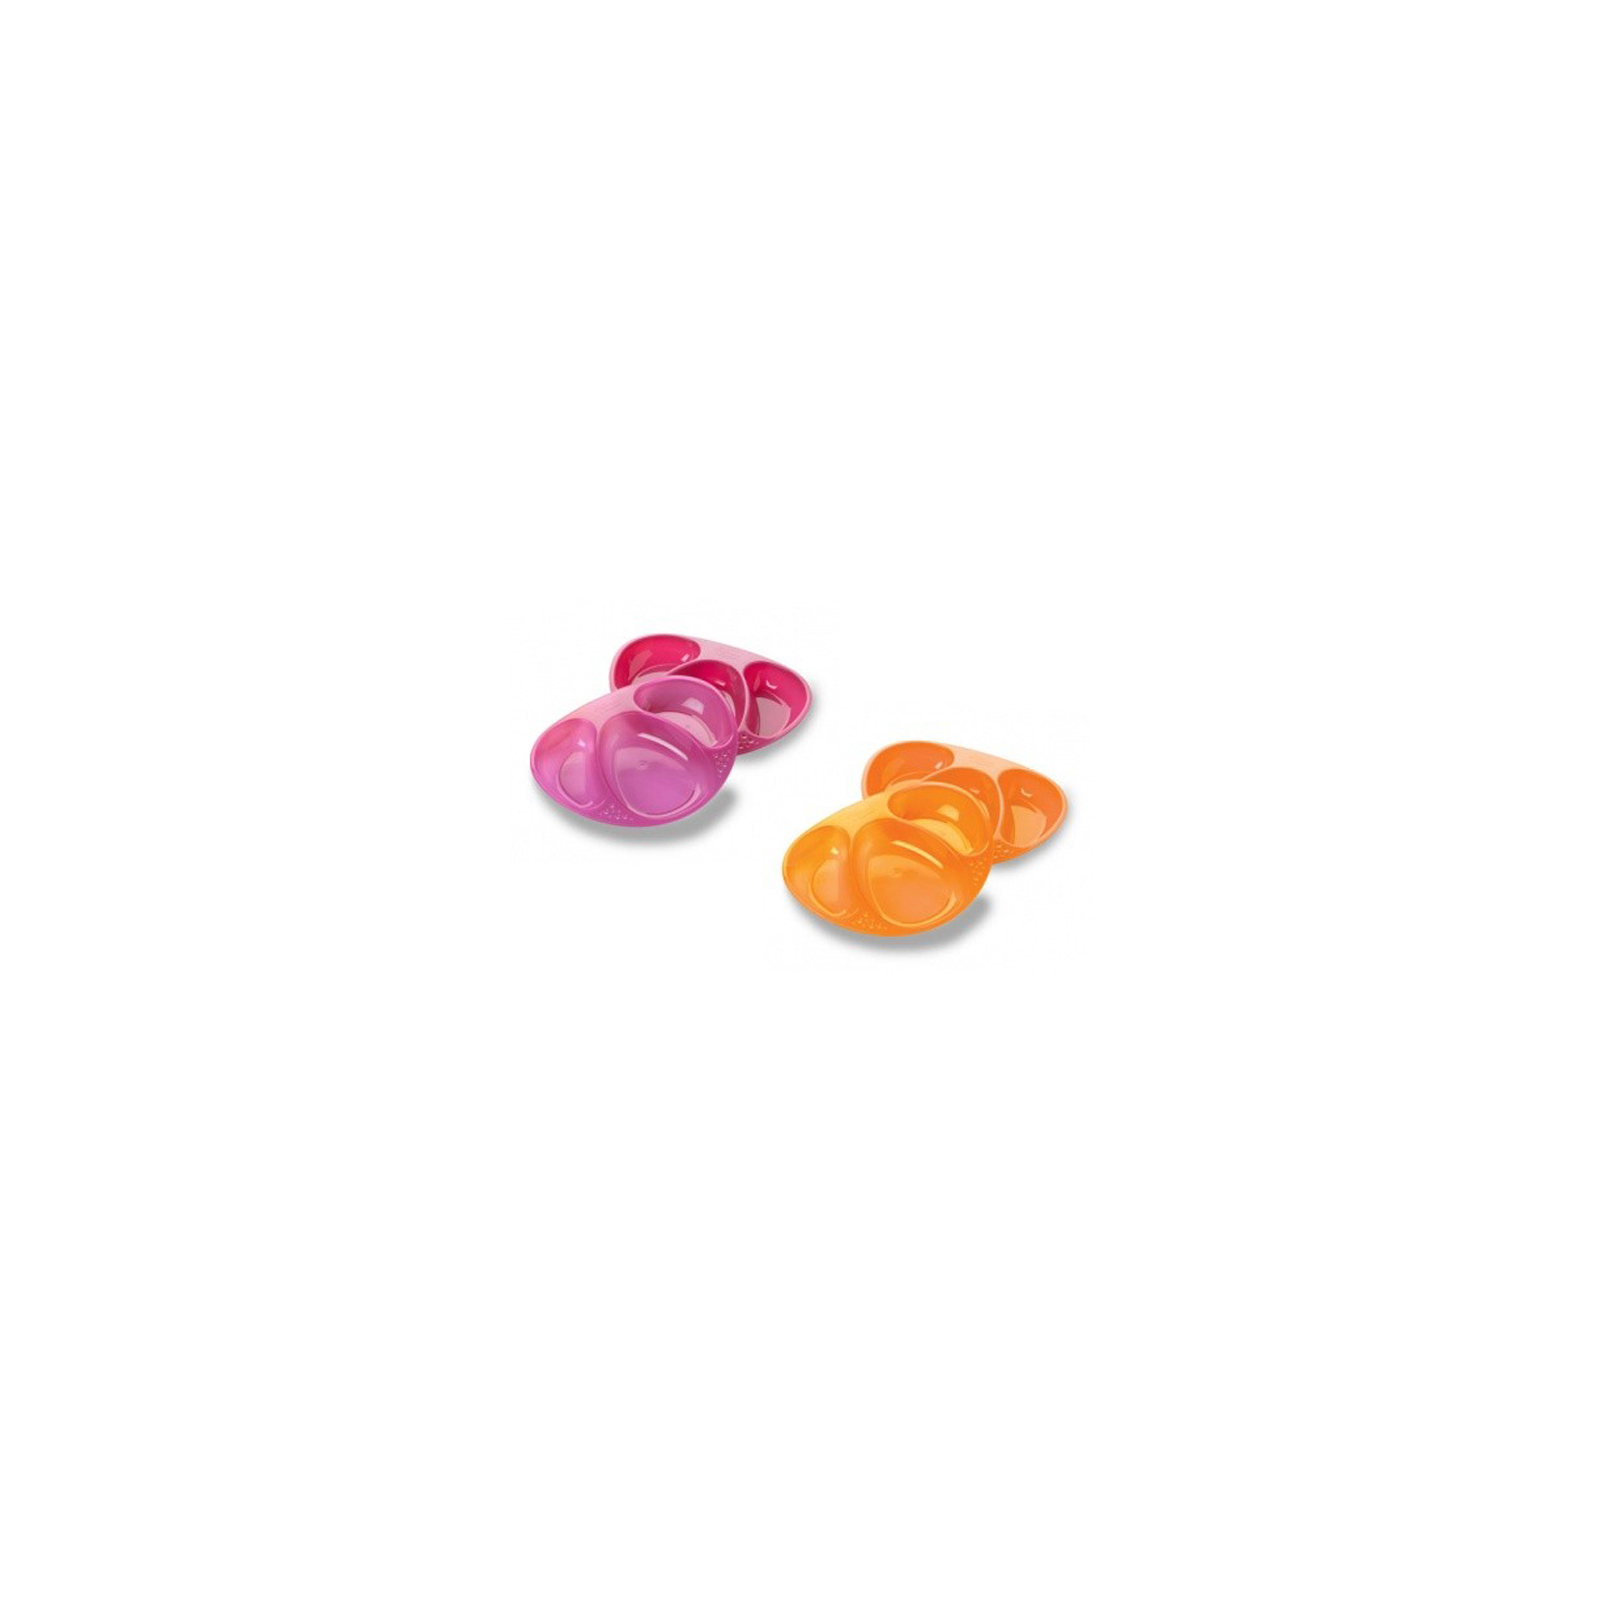 Тарелка детская Tommee Tippee трехсекционная фиолетовая и оранжевая 2 шт (440272-1)